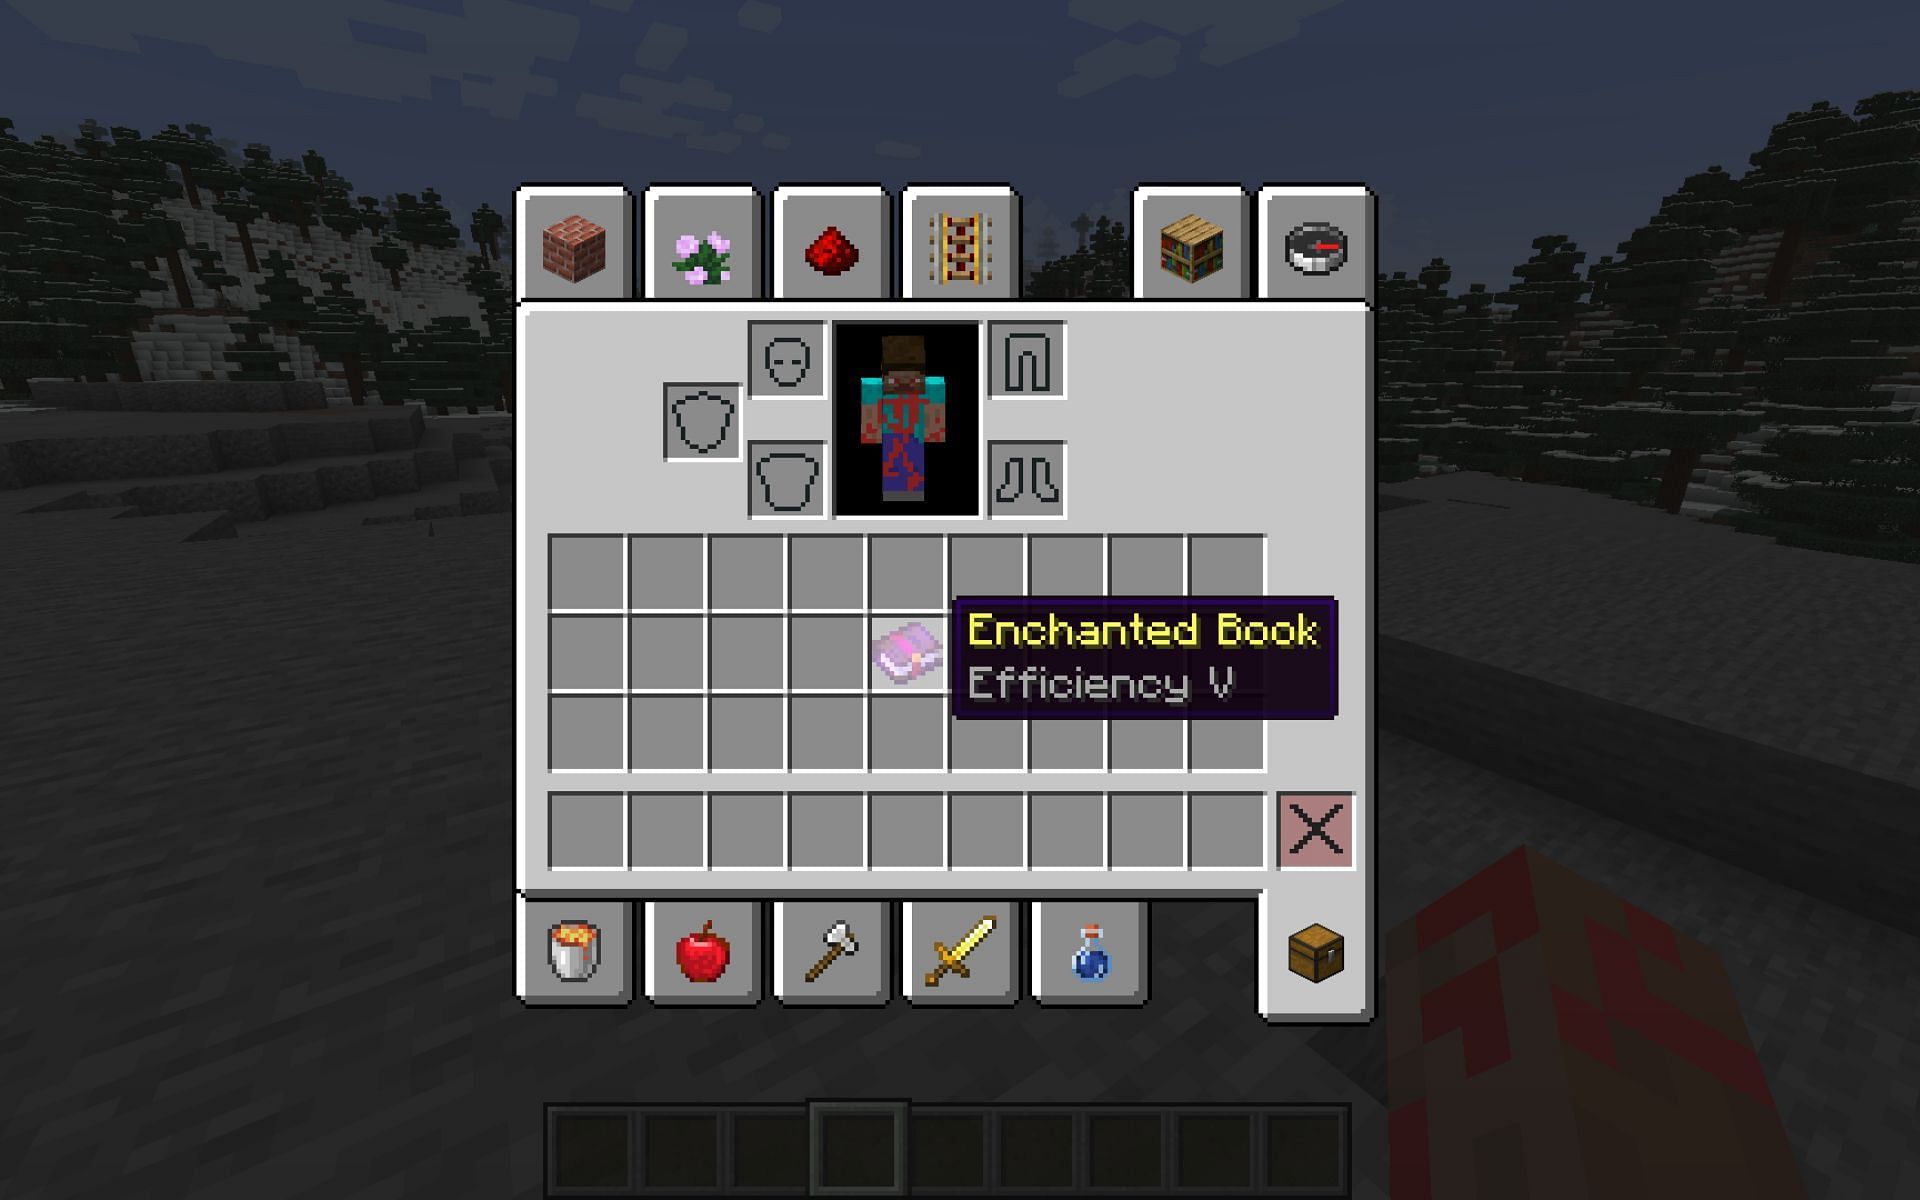 Efficiency 5 enchanted book (Image via Minecraft)